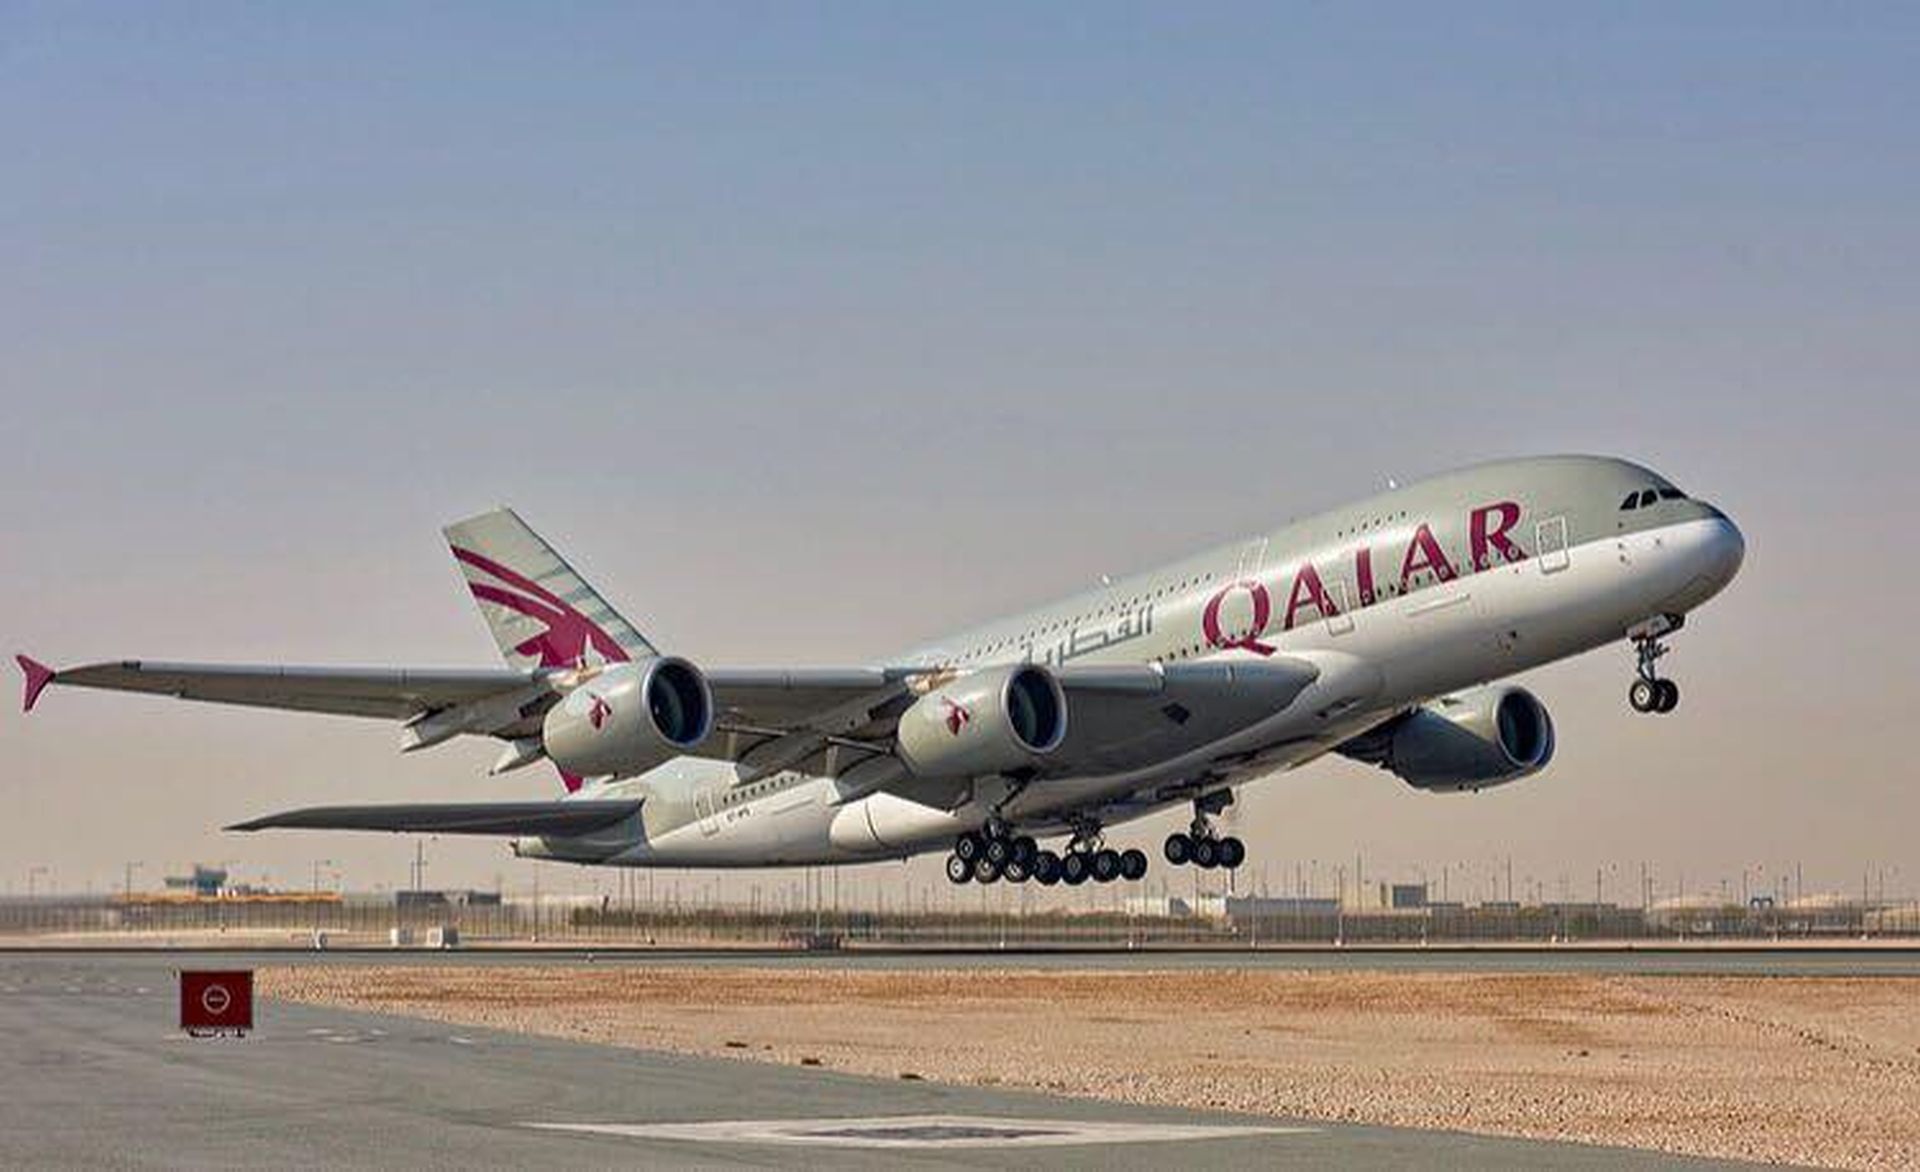 A380 společnosti Qatar Airways na vzletu z Dauhá. Foto: Qatar Airways